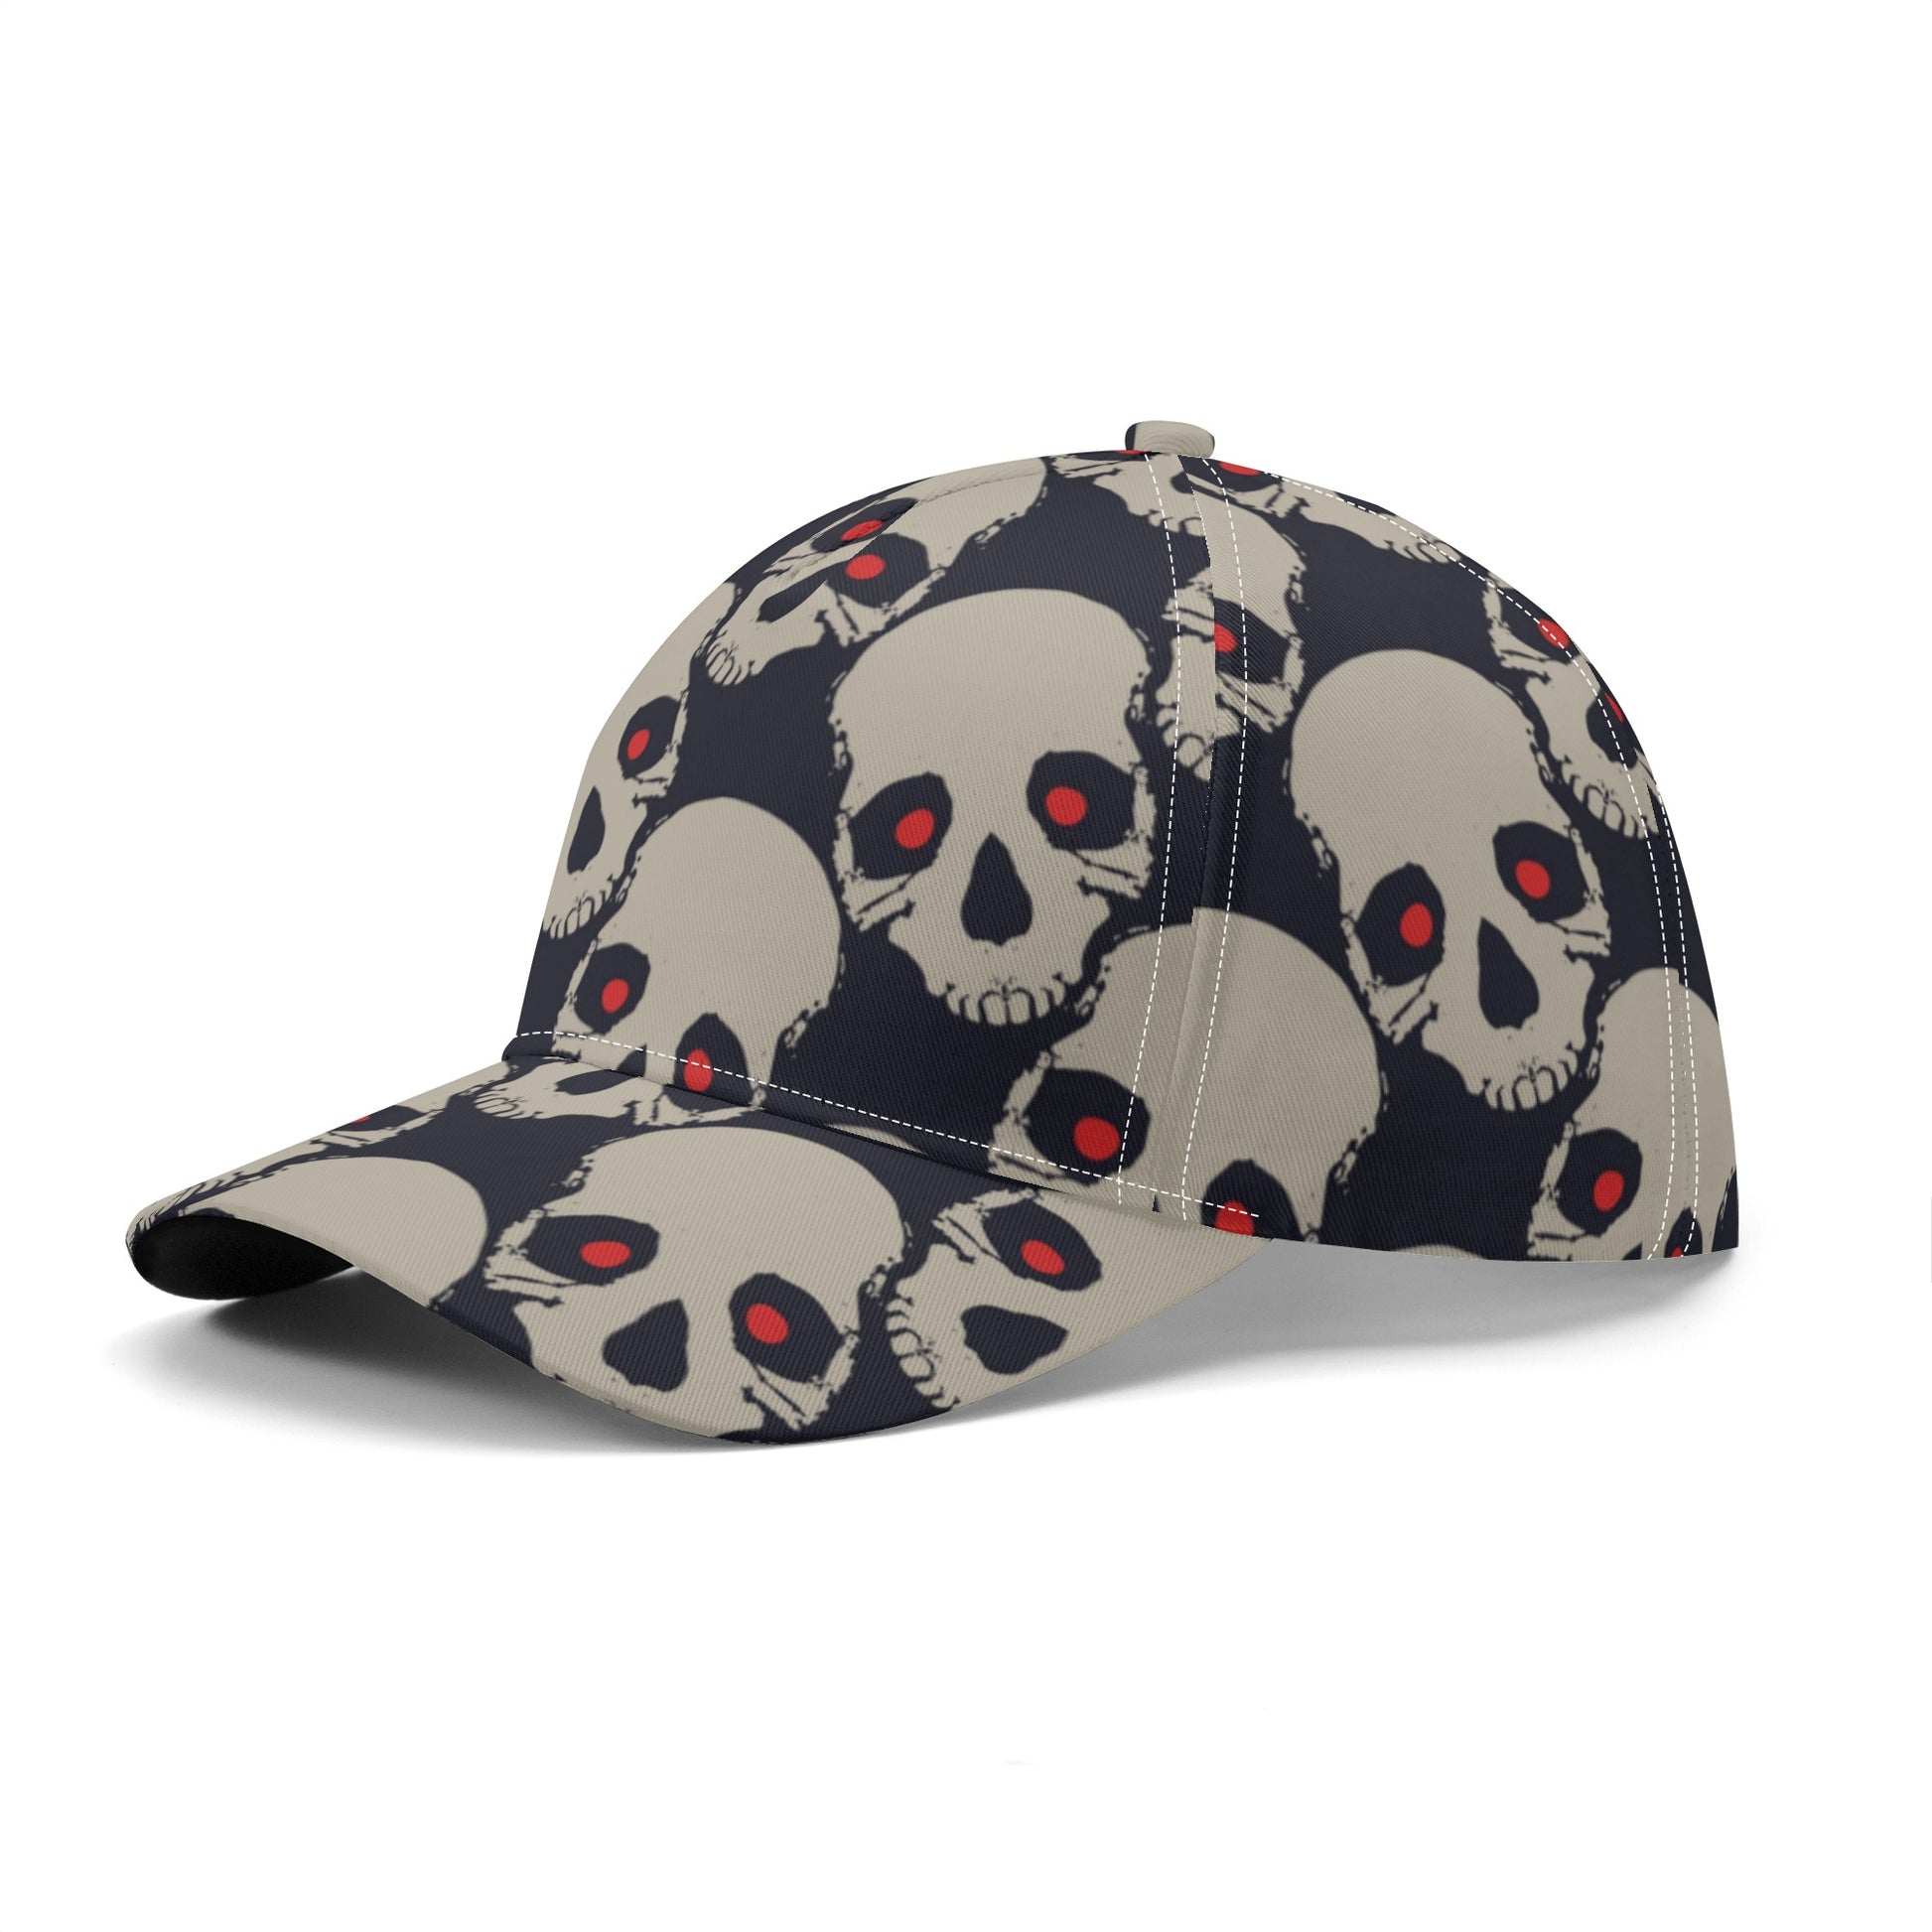 Red Eyed Skull Heads Baseball Caps